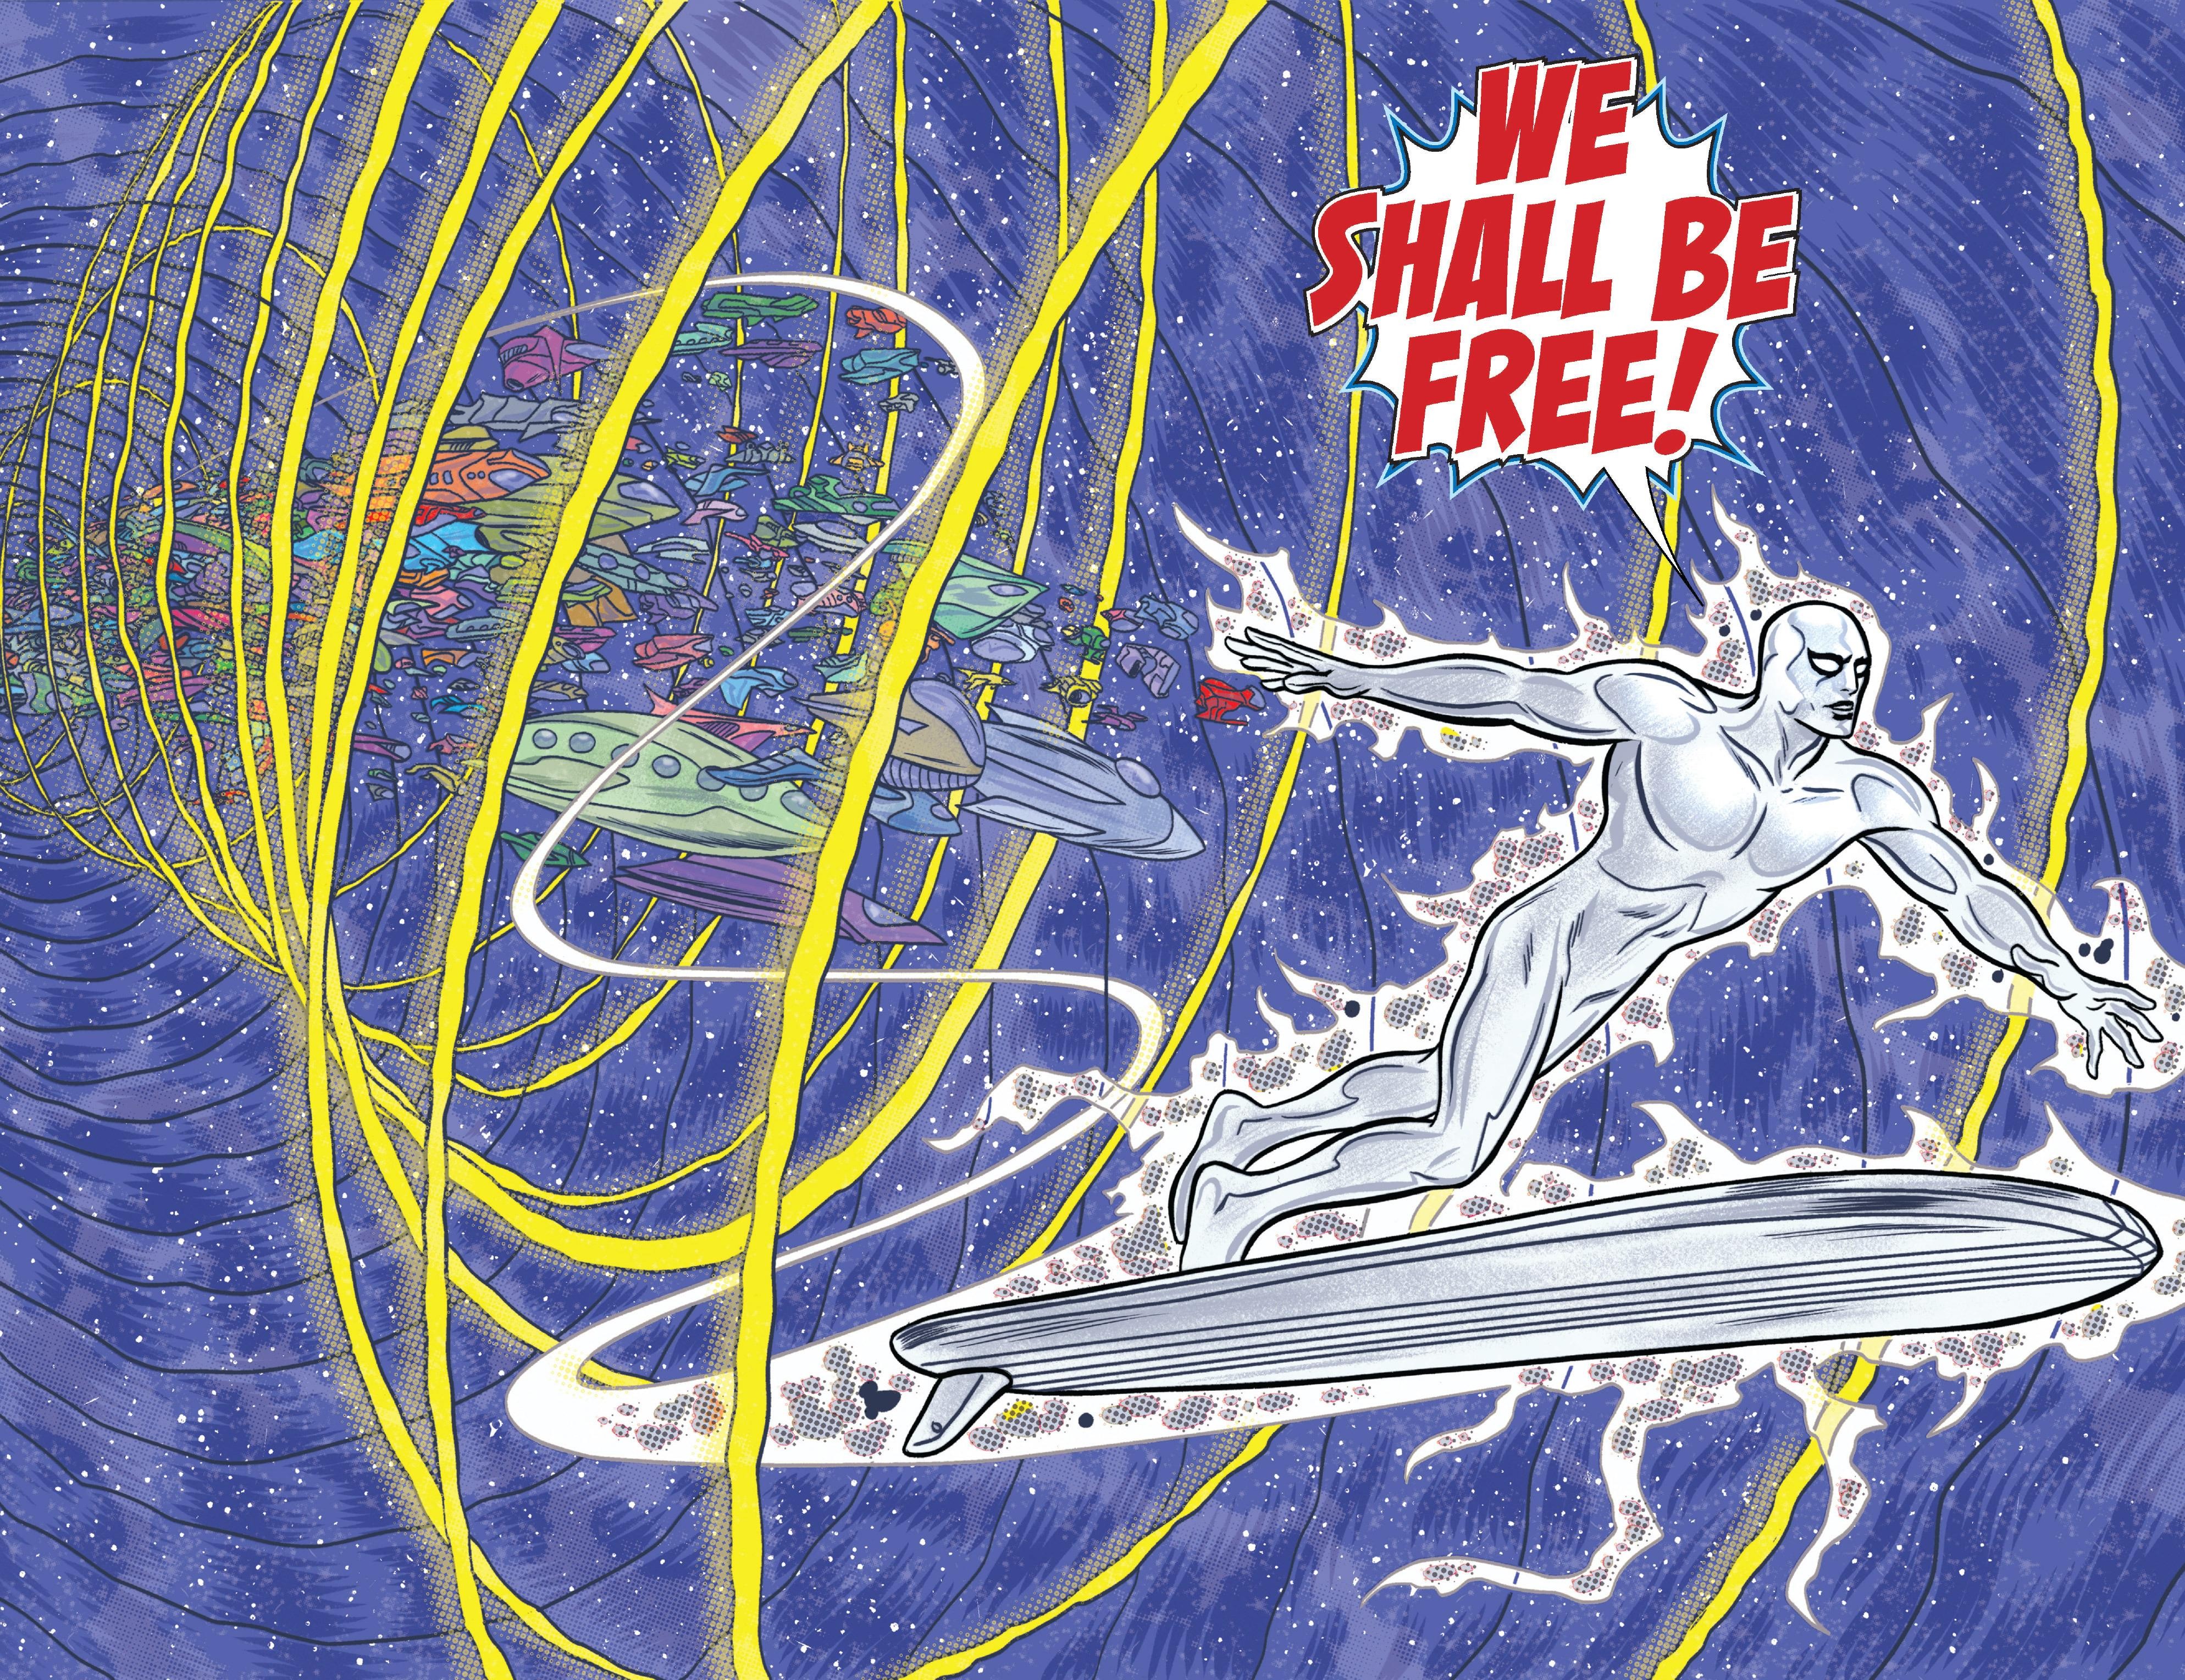 Silver Surfer, Comics, Marvel Comics Wallpaper